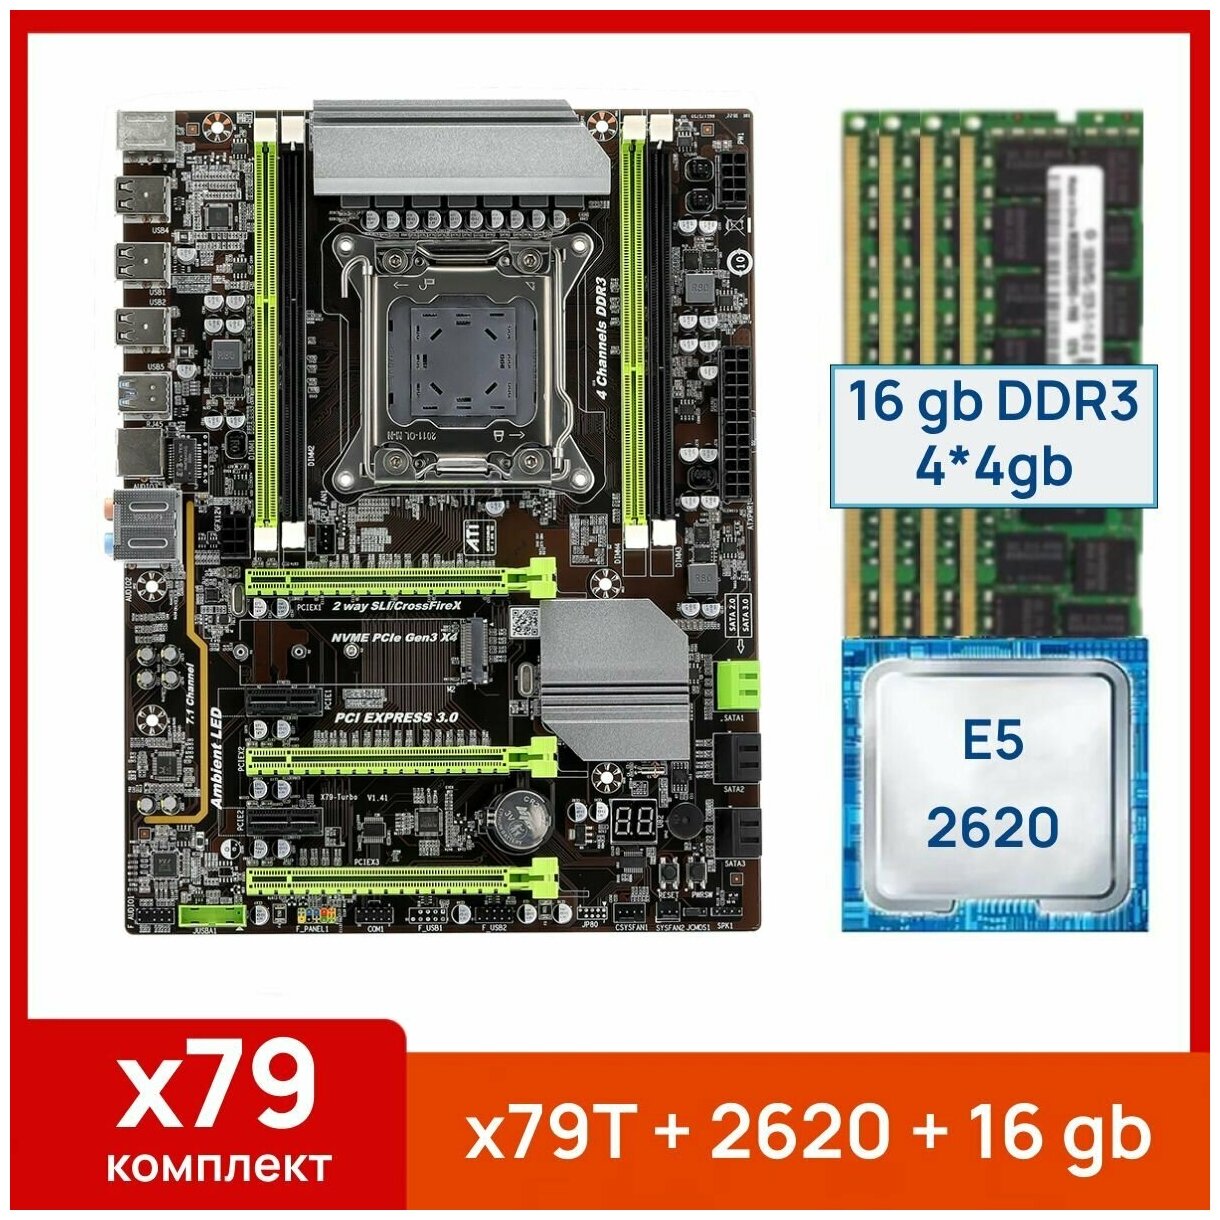 Комплект: Atermiter x79-Turbo + Xeon E5 2620 + 16 gb(4x4gb) DDR3 ecc reg